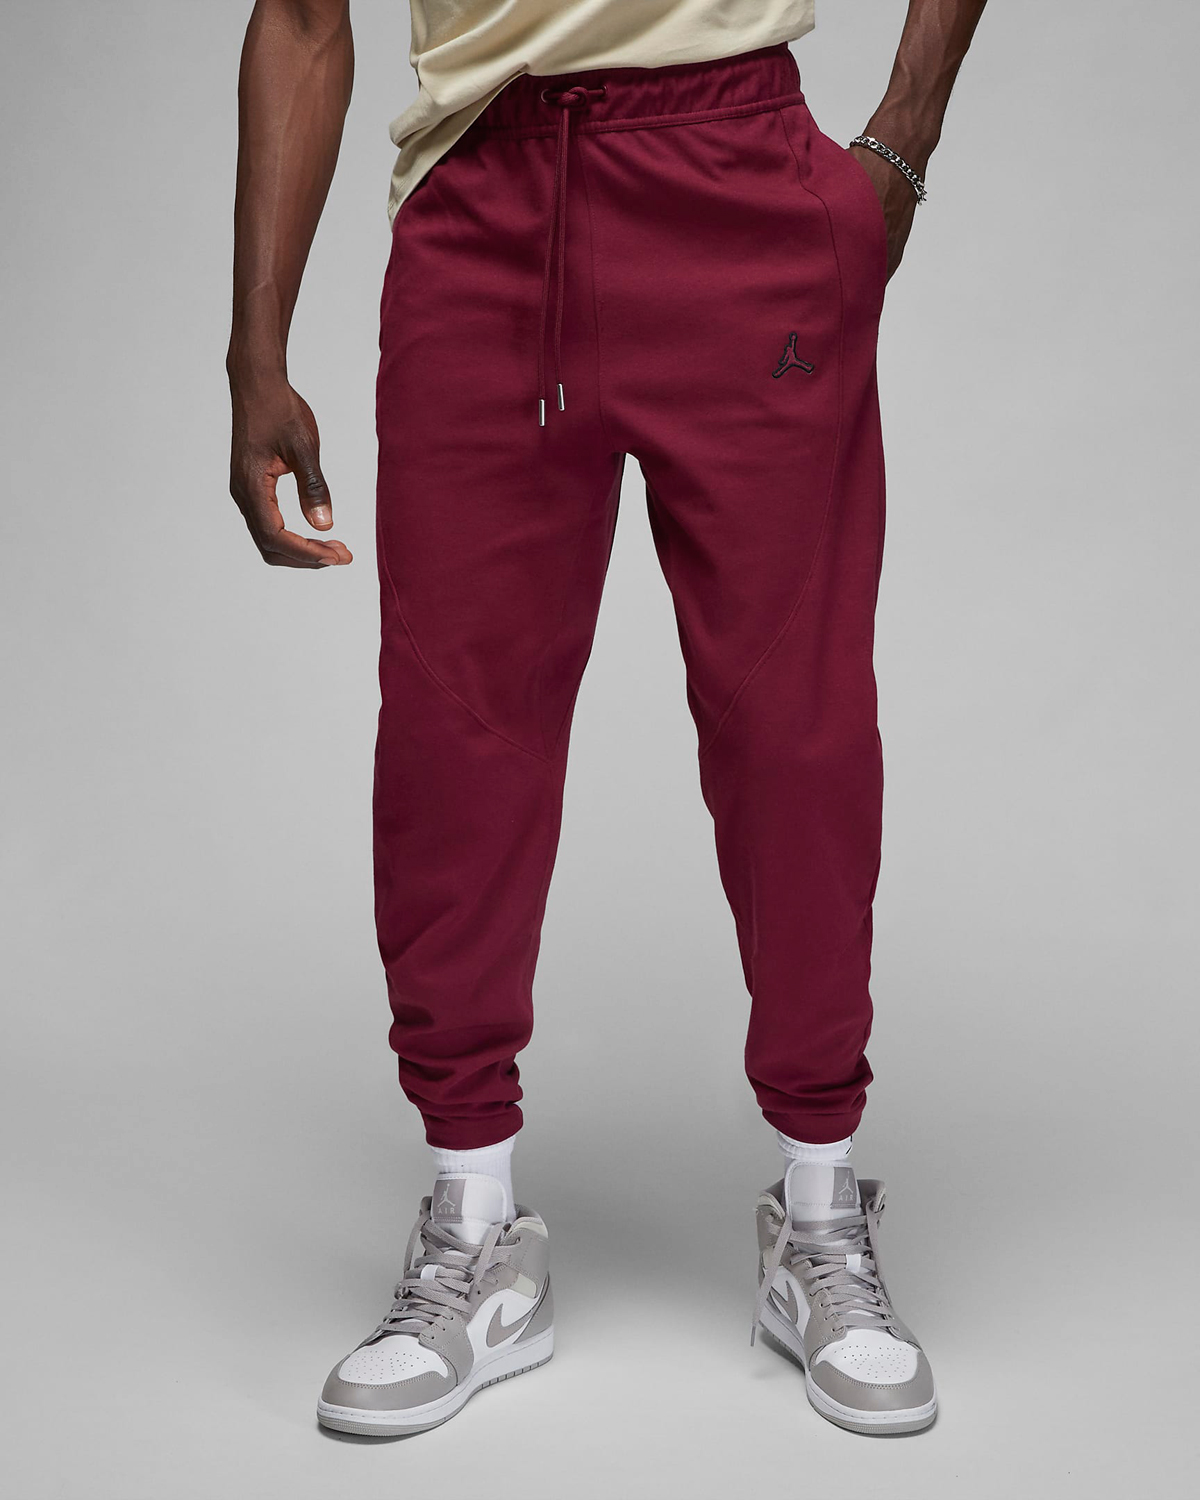 Jordan-Essentials-Warmup-Pants-Cherrywood-Red